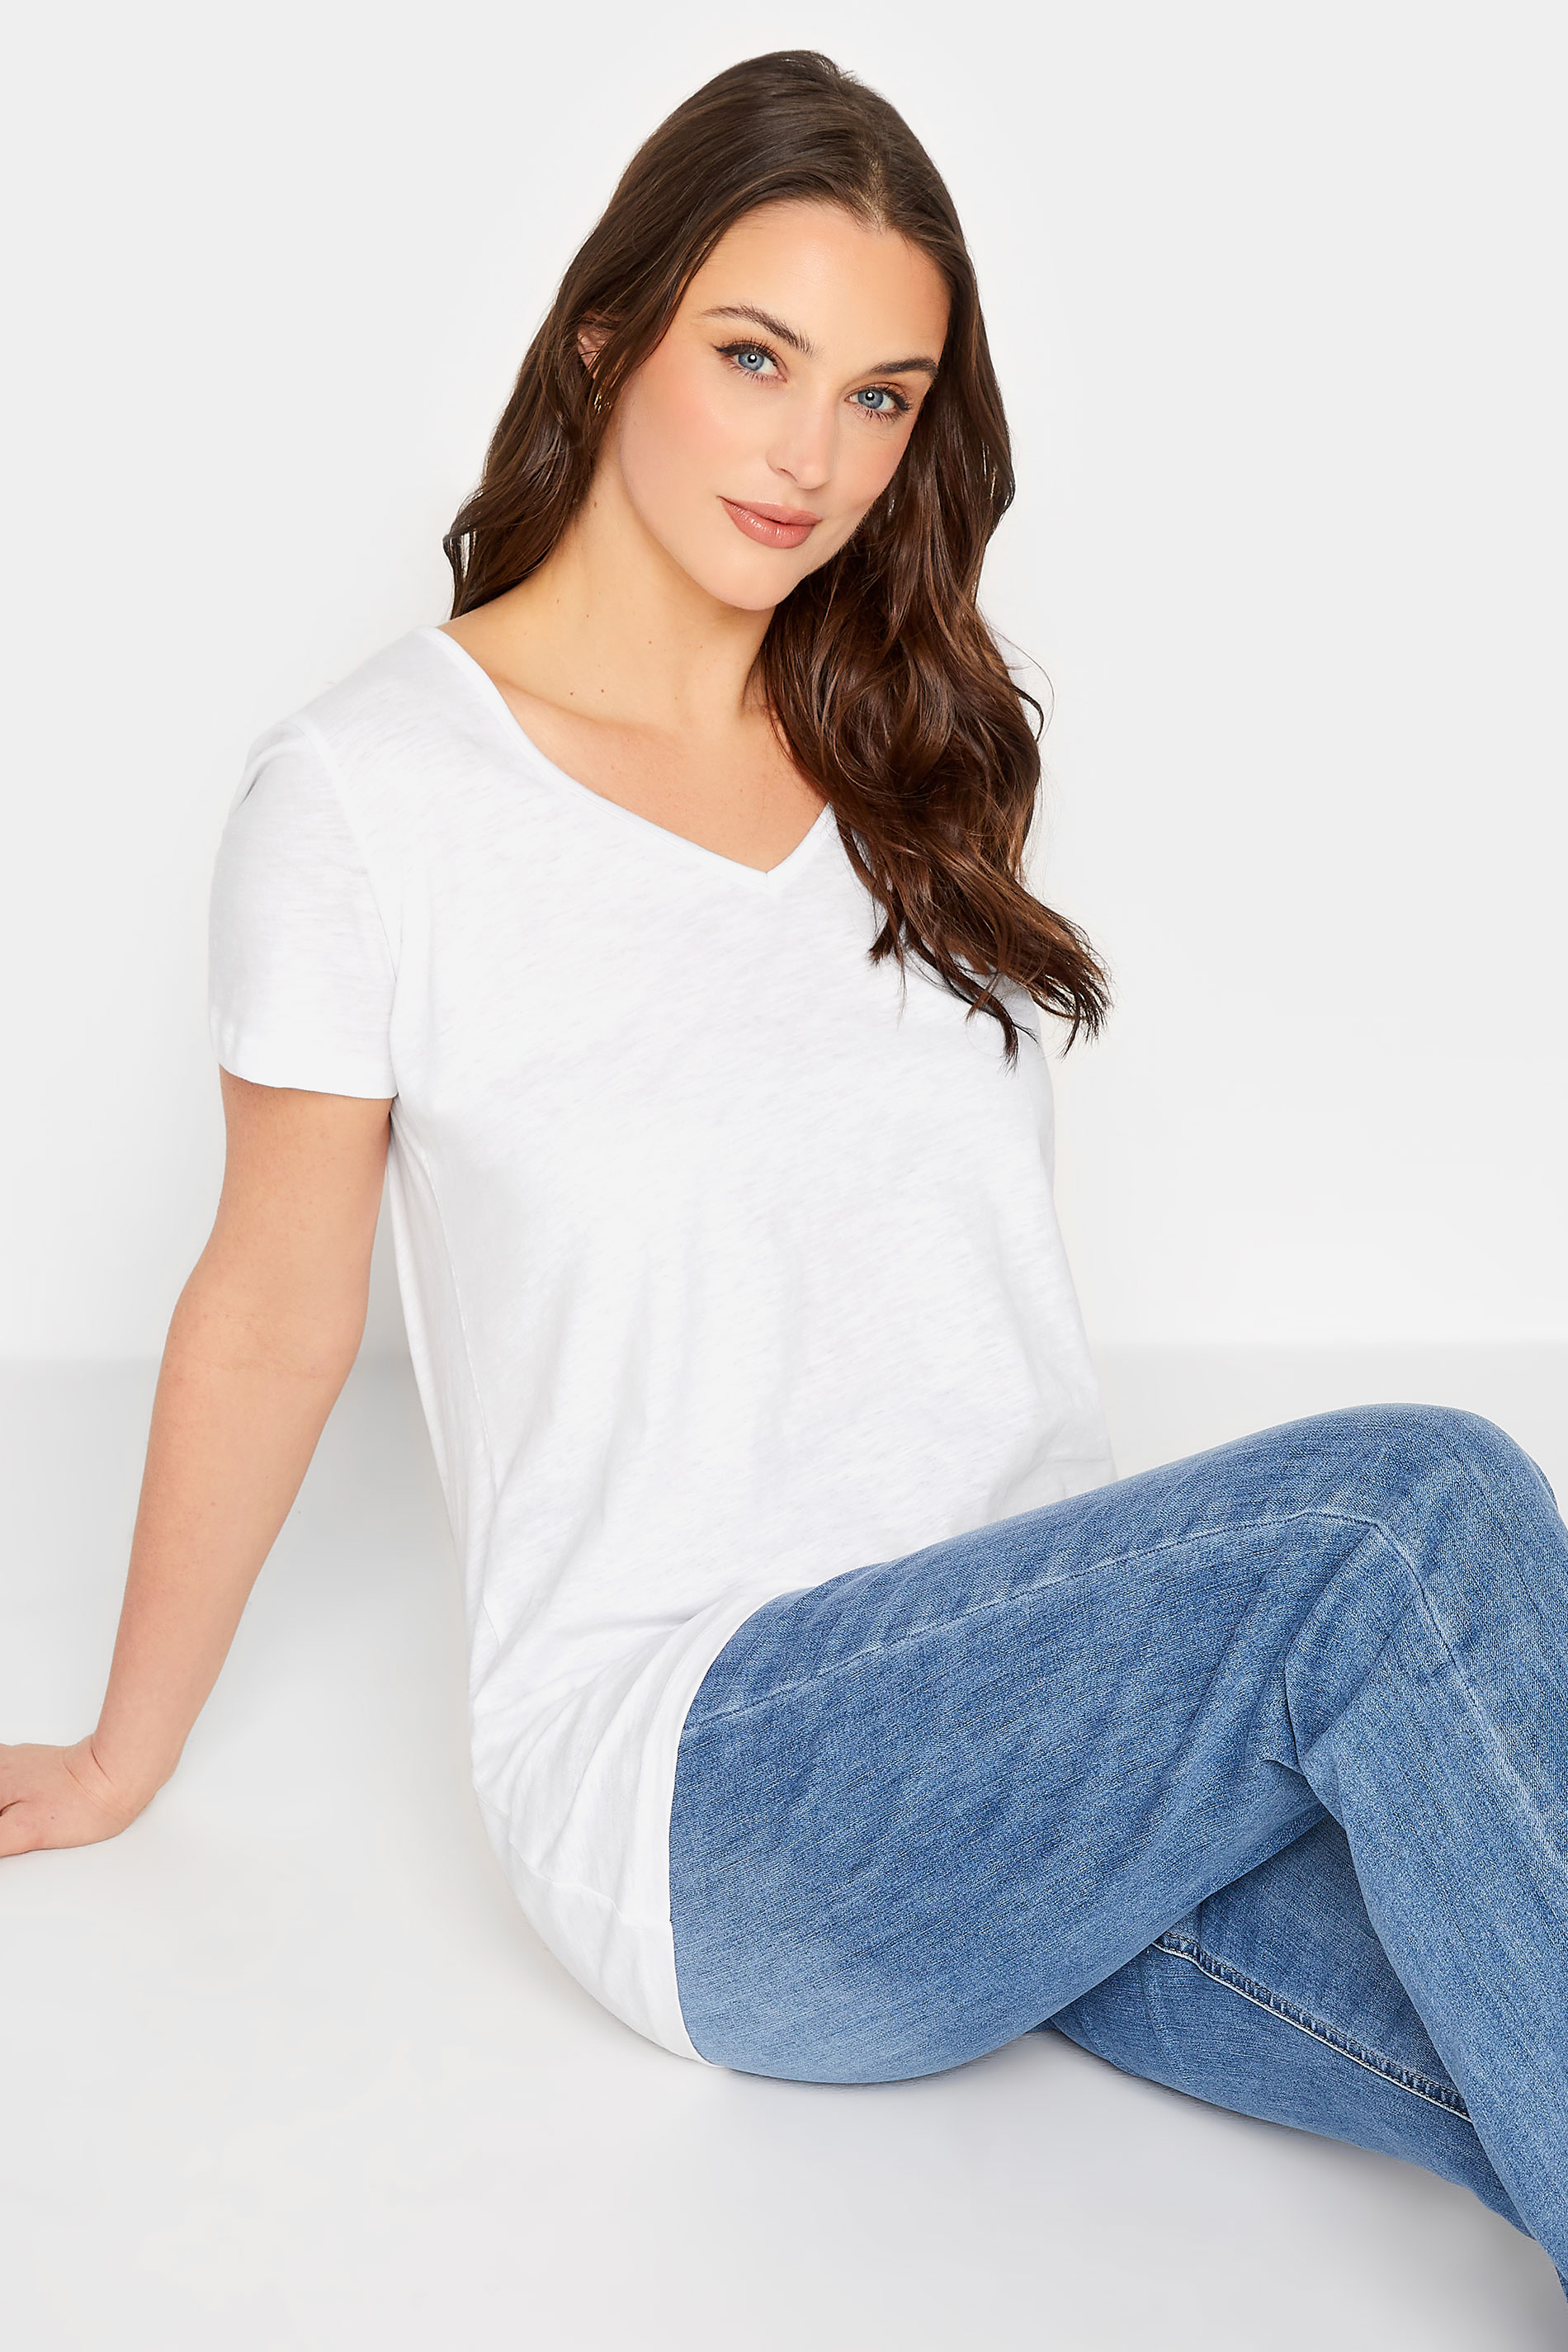 LTS Tall Women's White Short Sleeve Cotton T-Shirt | Long Tall Sally 1